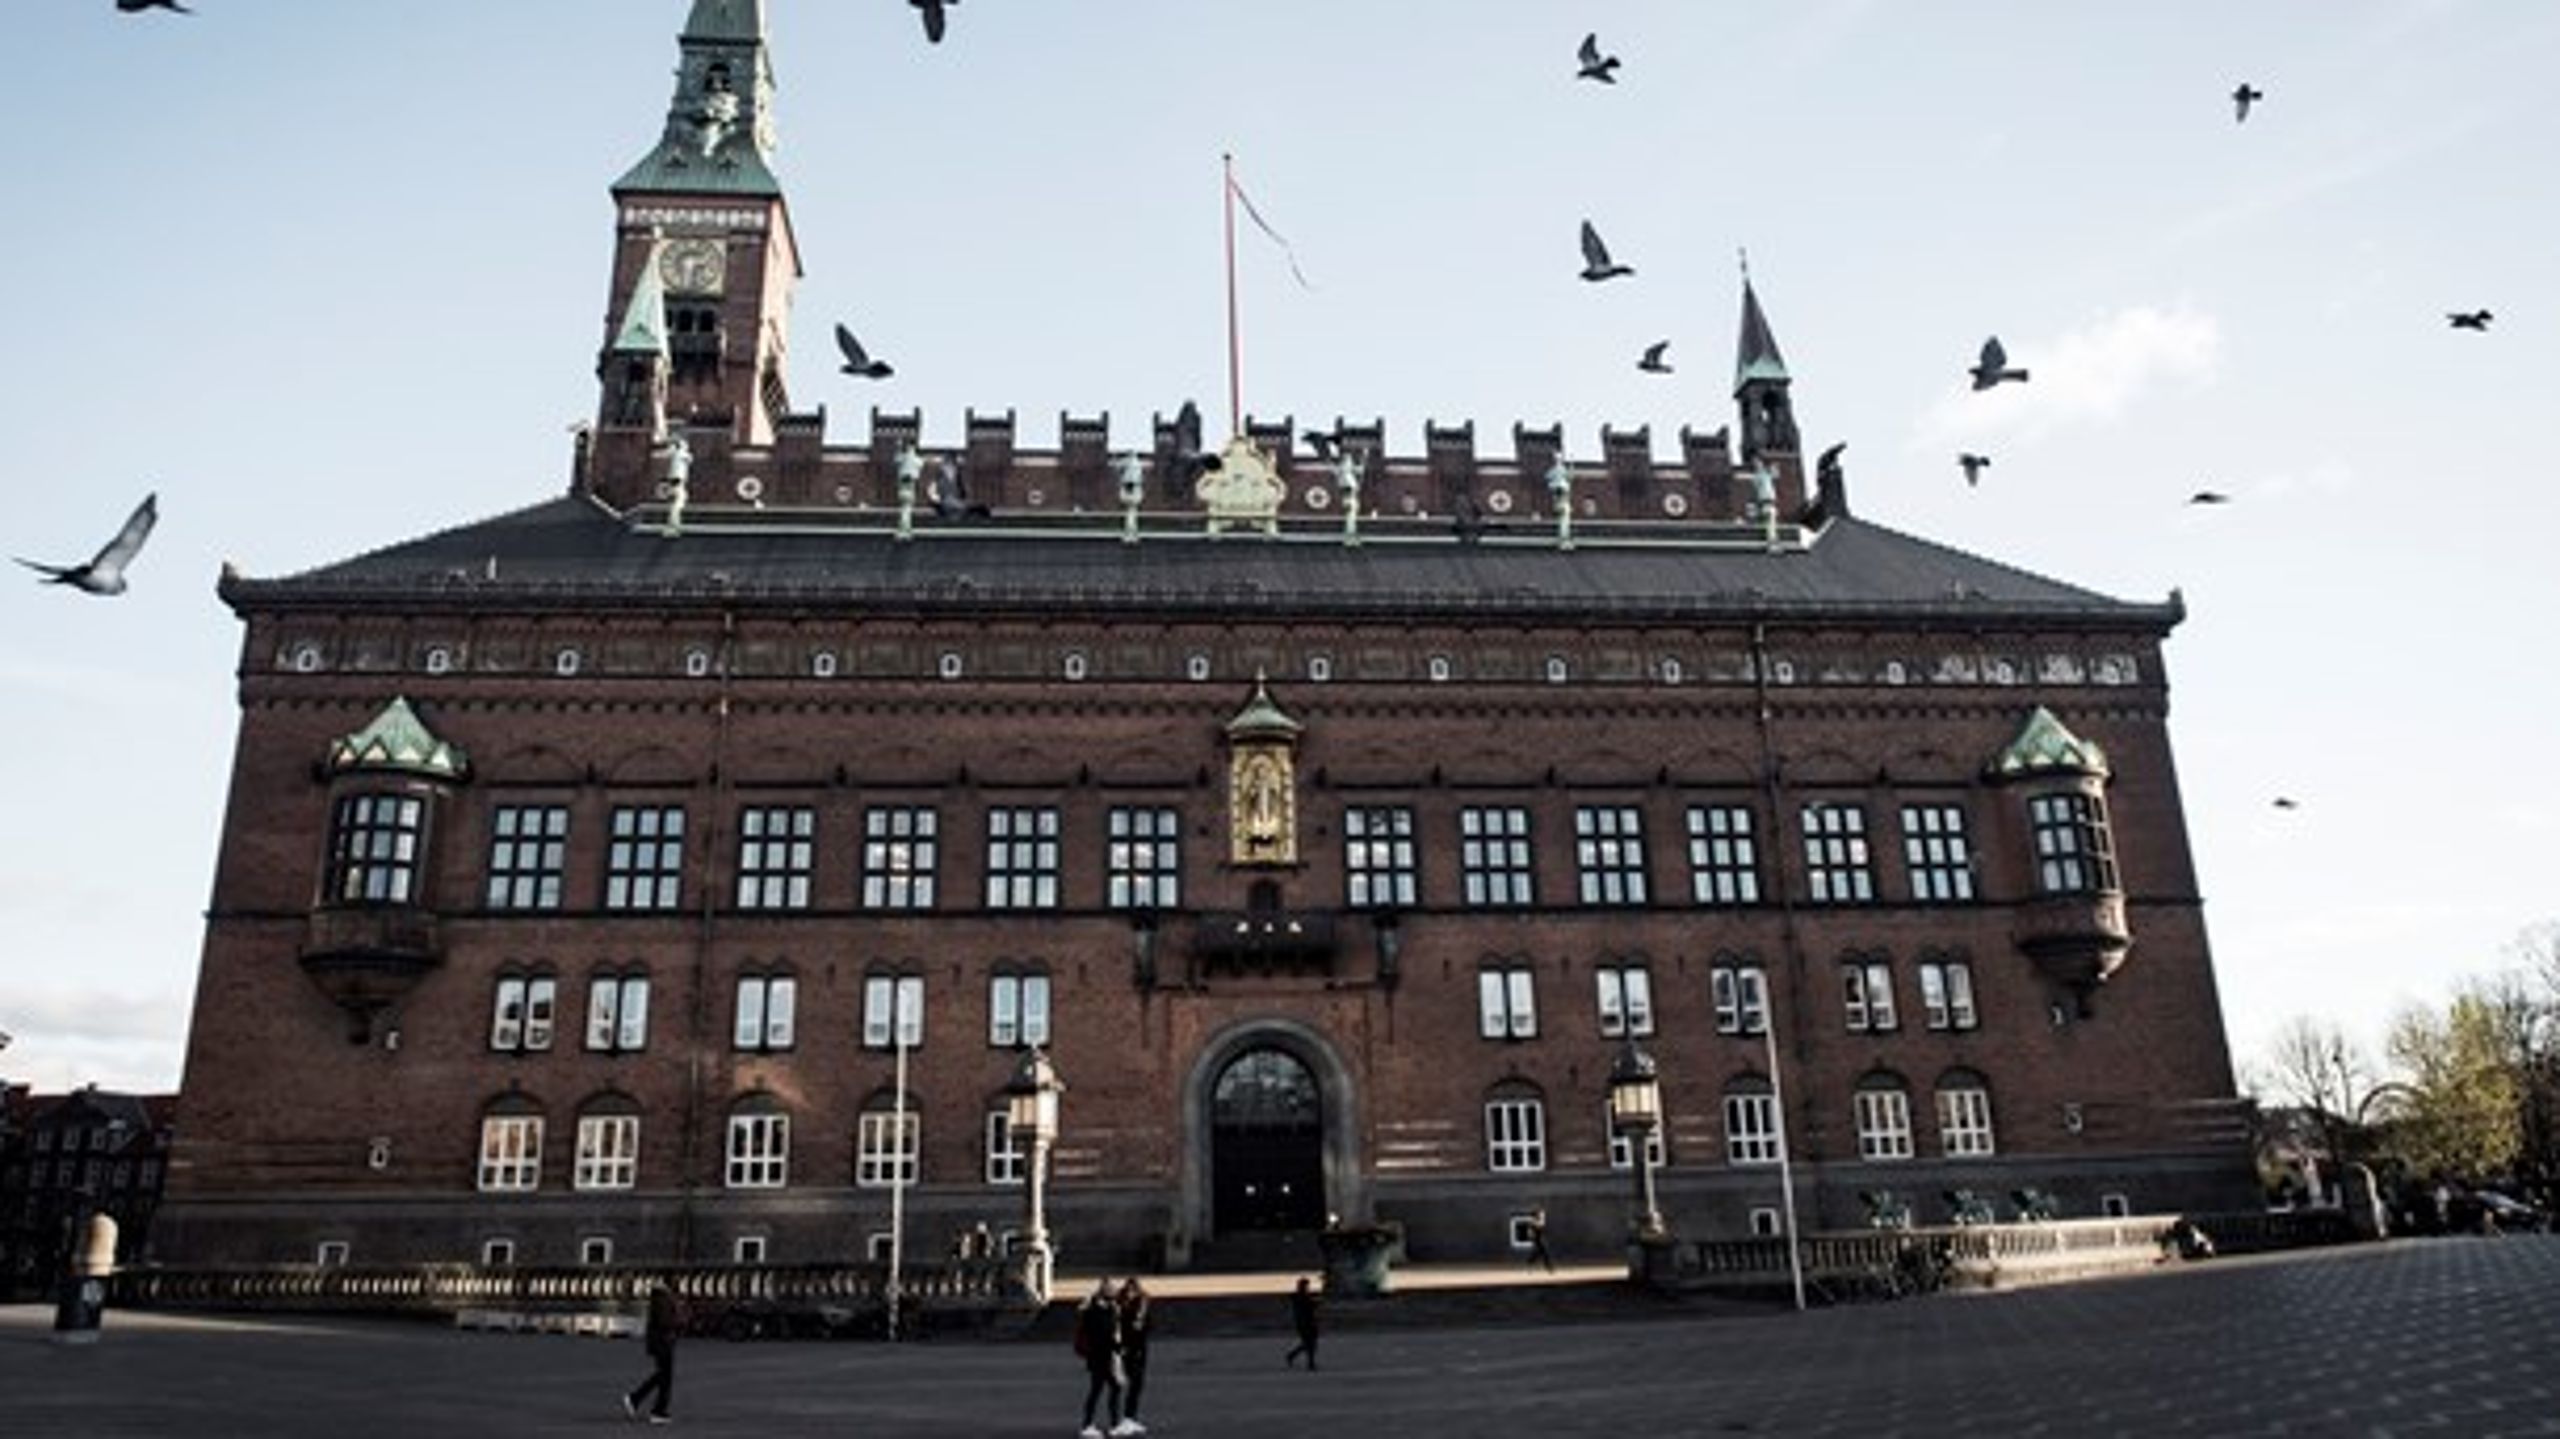 Politikerne på Københavns Rådhus skal inddrage de private ejendomsejere i diskussionerne om kommuneplanen, så man kan komme af med&nbsp;bureaukratiske regler, skriver Jannick Nytoft.